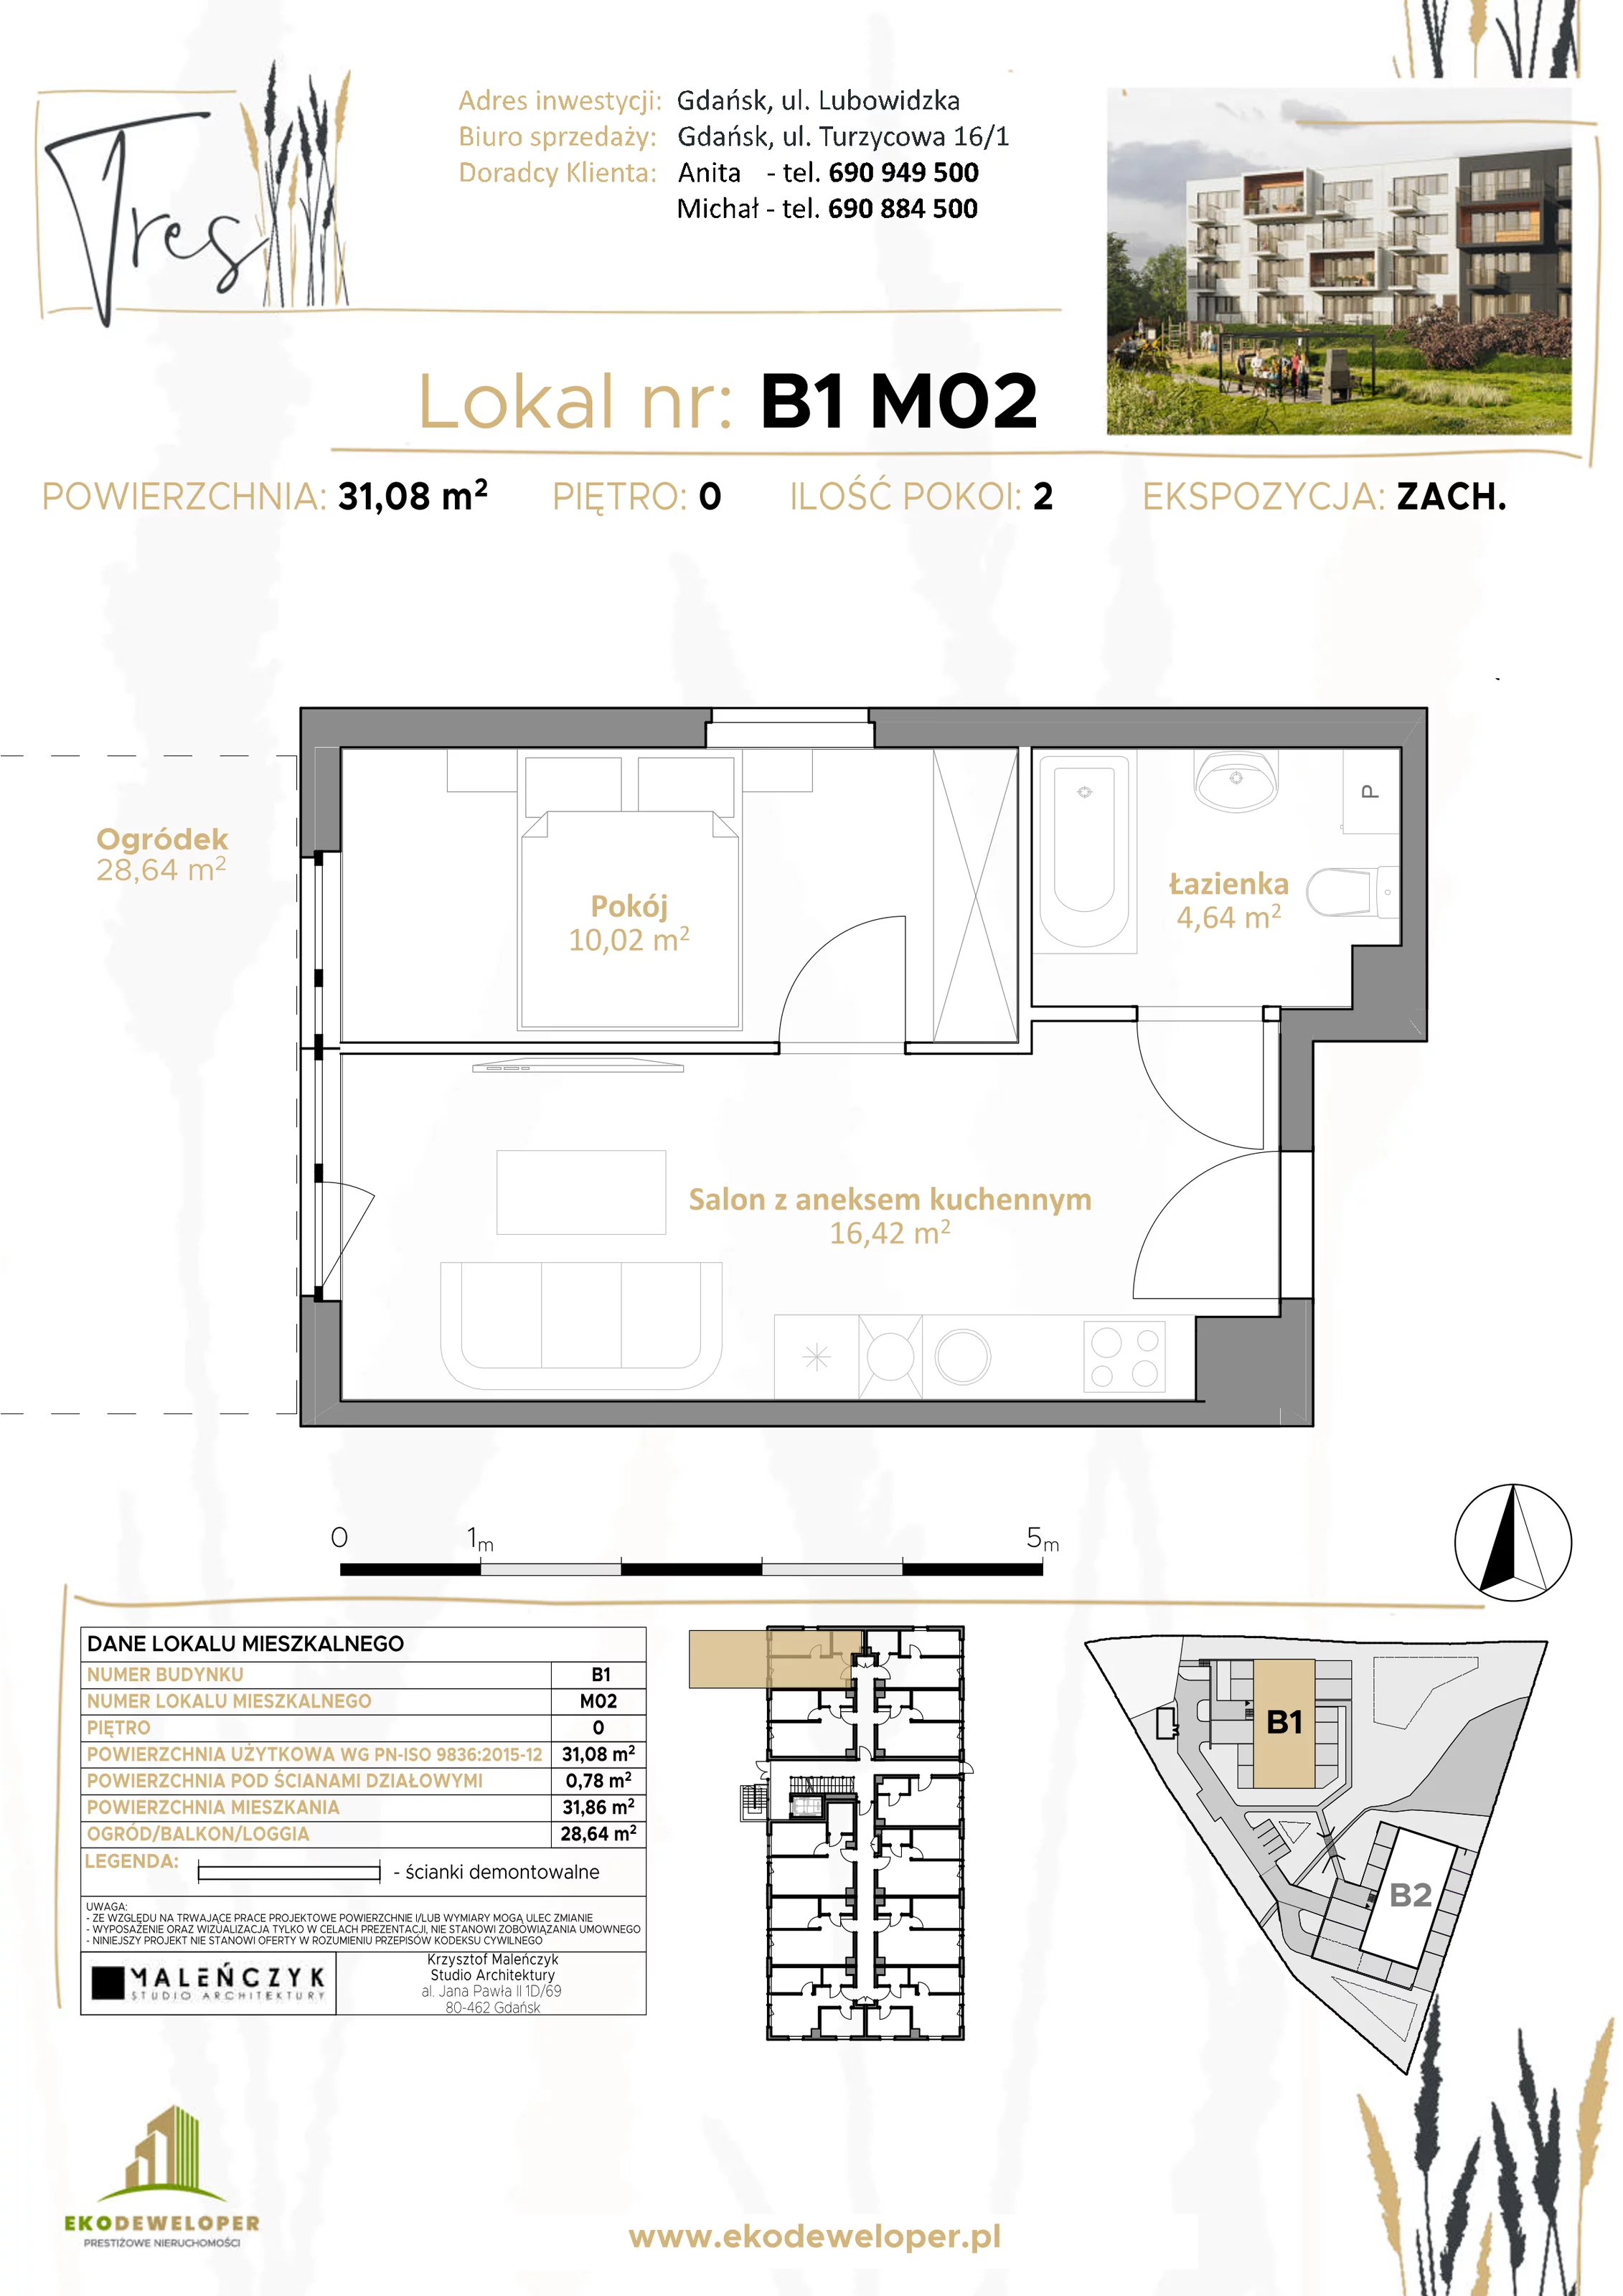 Mieszkanie 31,08 m², parter, oferta nr B1.M02, Tres, Gdańsk, Jasień, ul. Lubowidzka